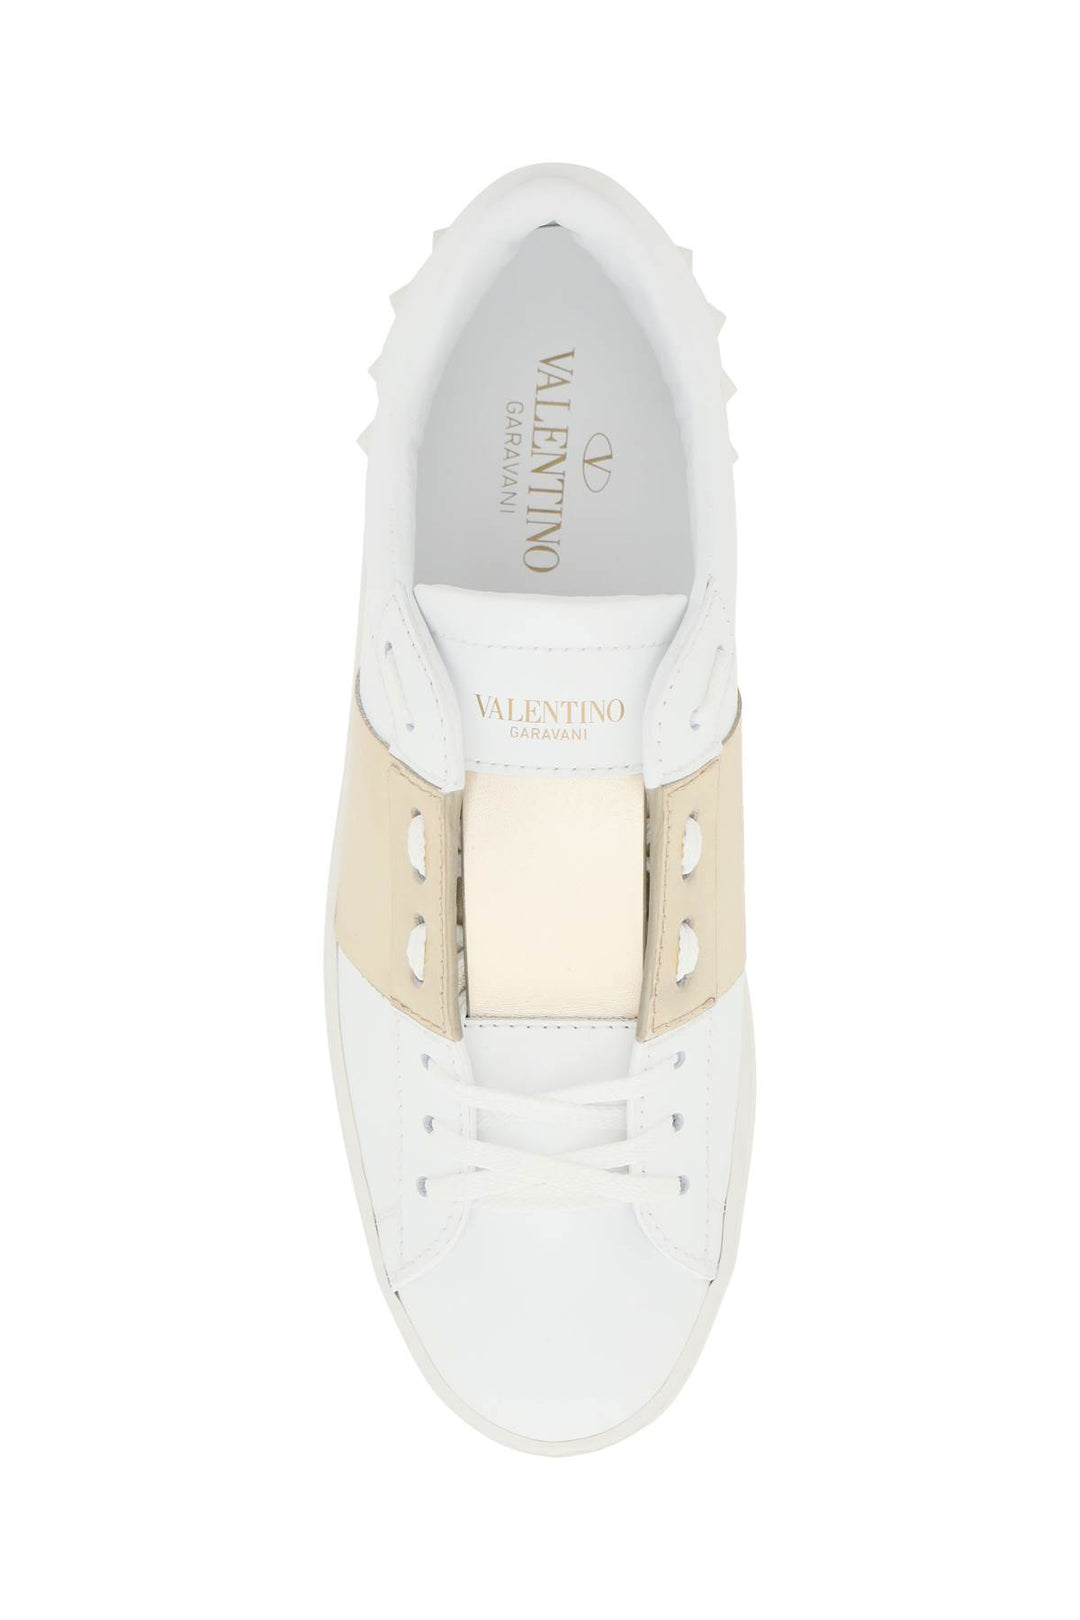 Valentino Garavani Open Leather Sneakers   White